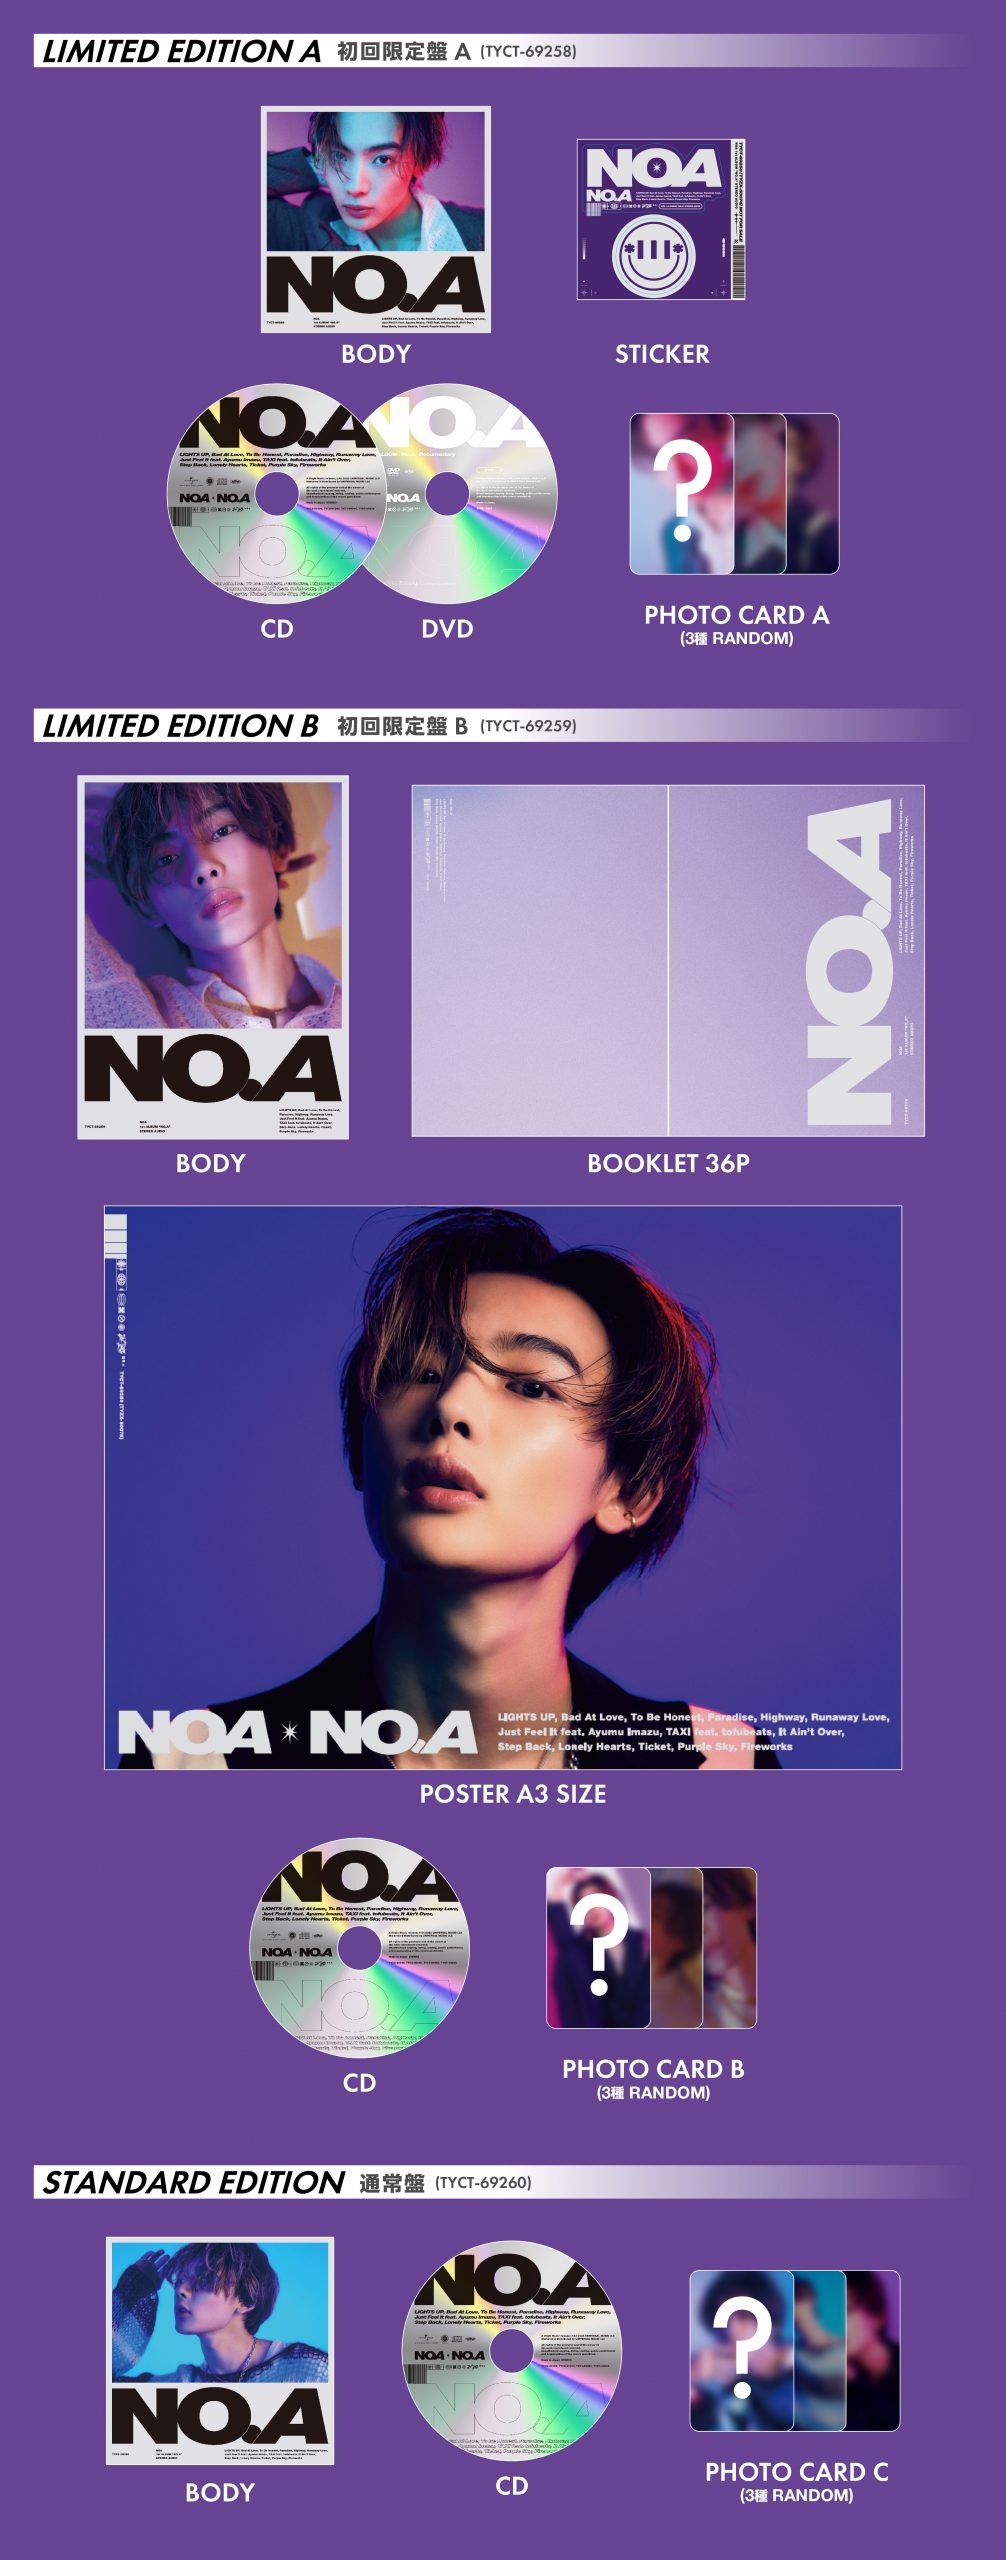 1st ALBUM『NO.A』商品詳細画像公開！ - NOA